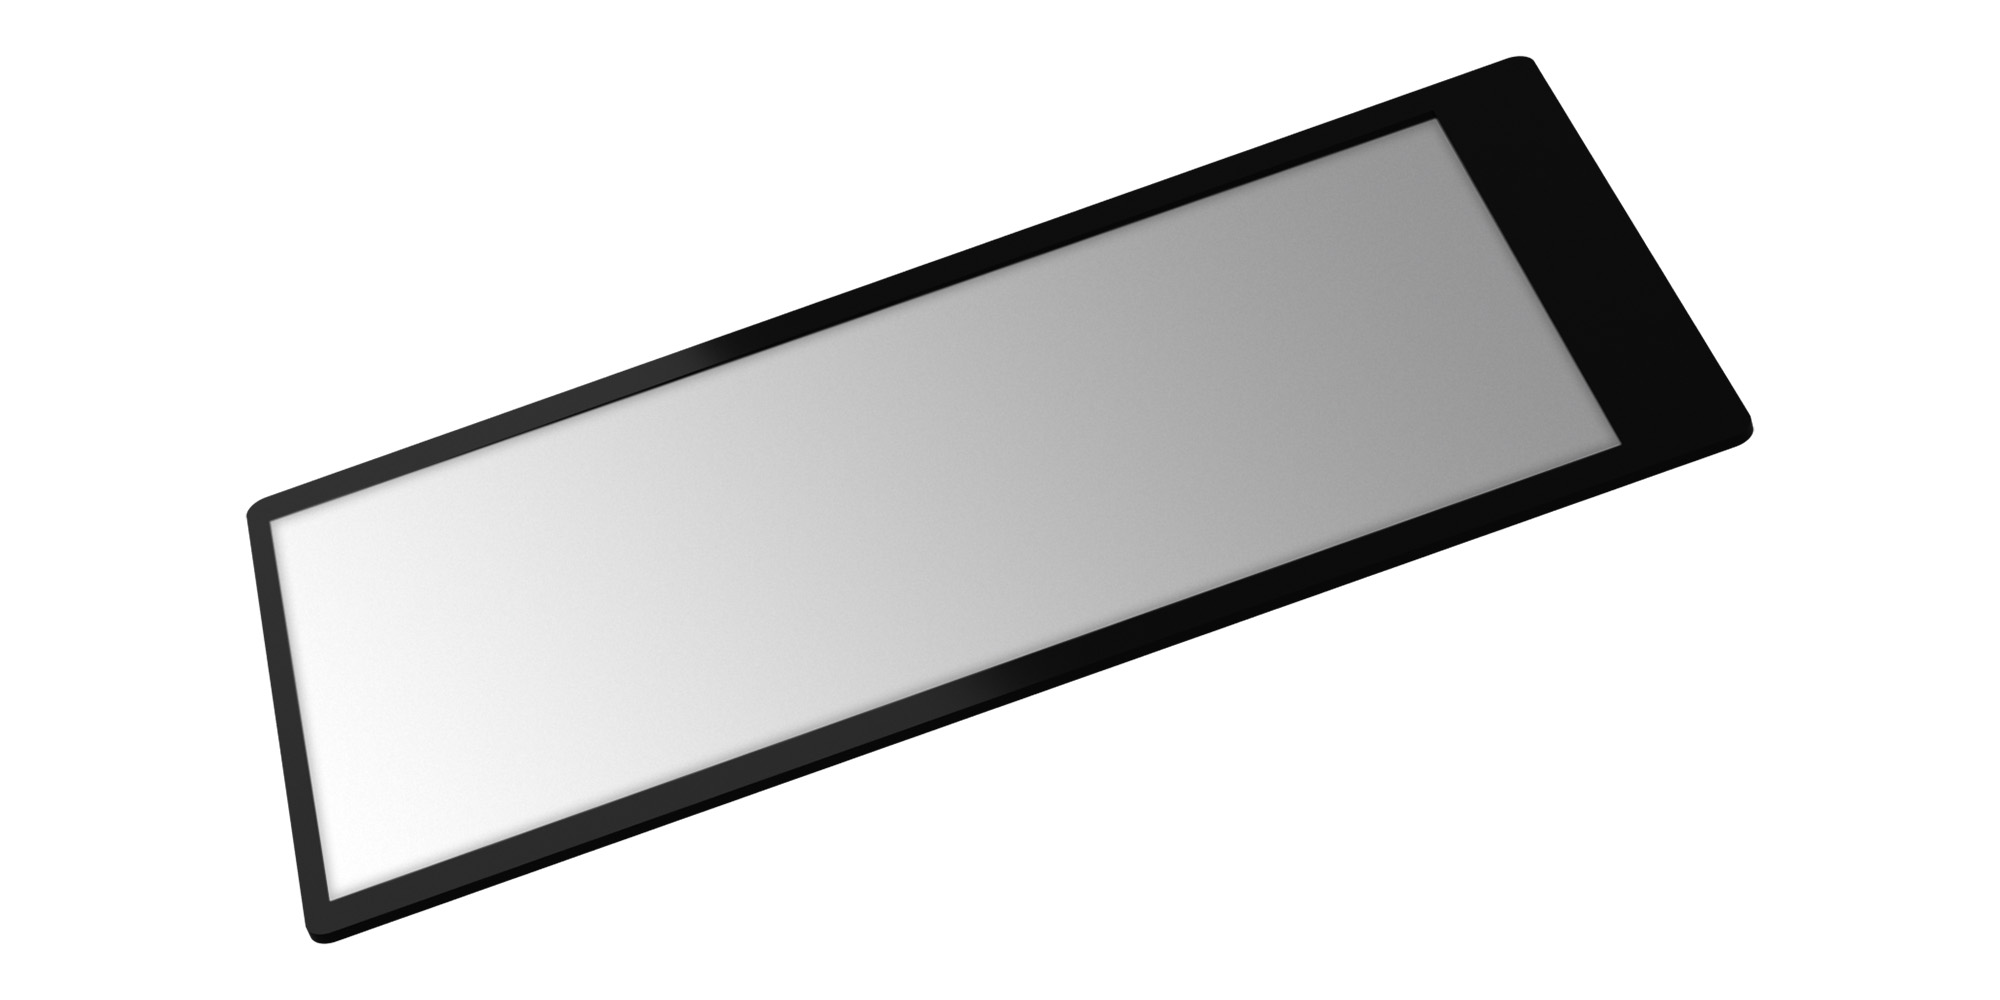 Osłona  LCD GGS Larmor do Sony a7 IV